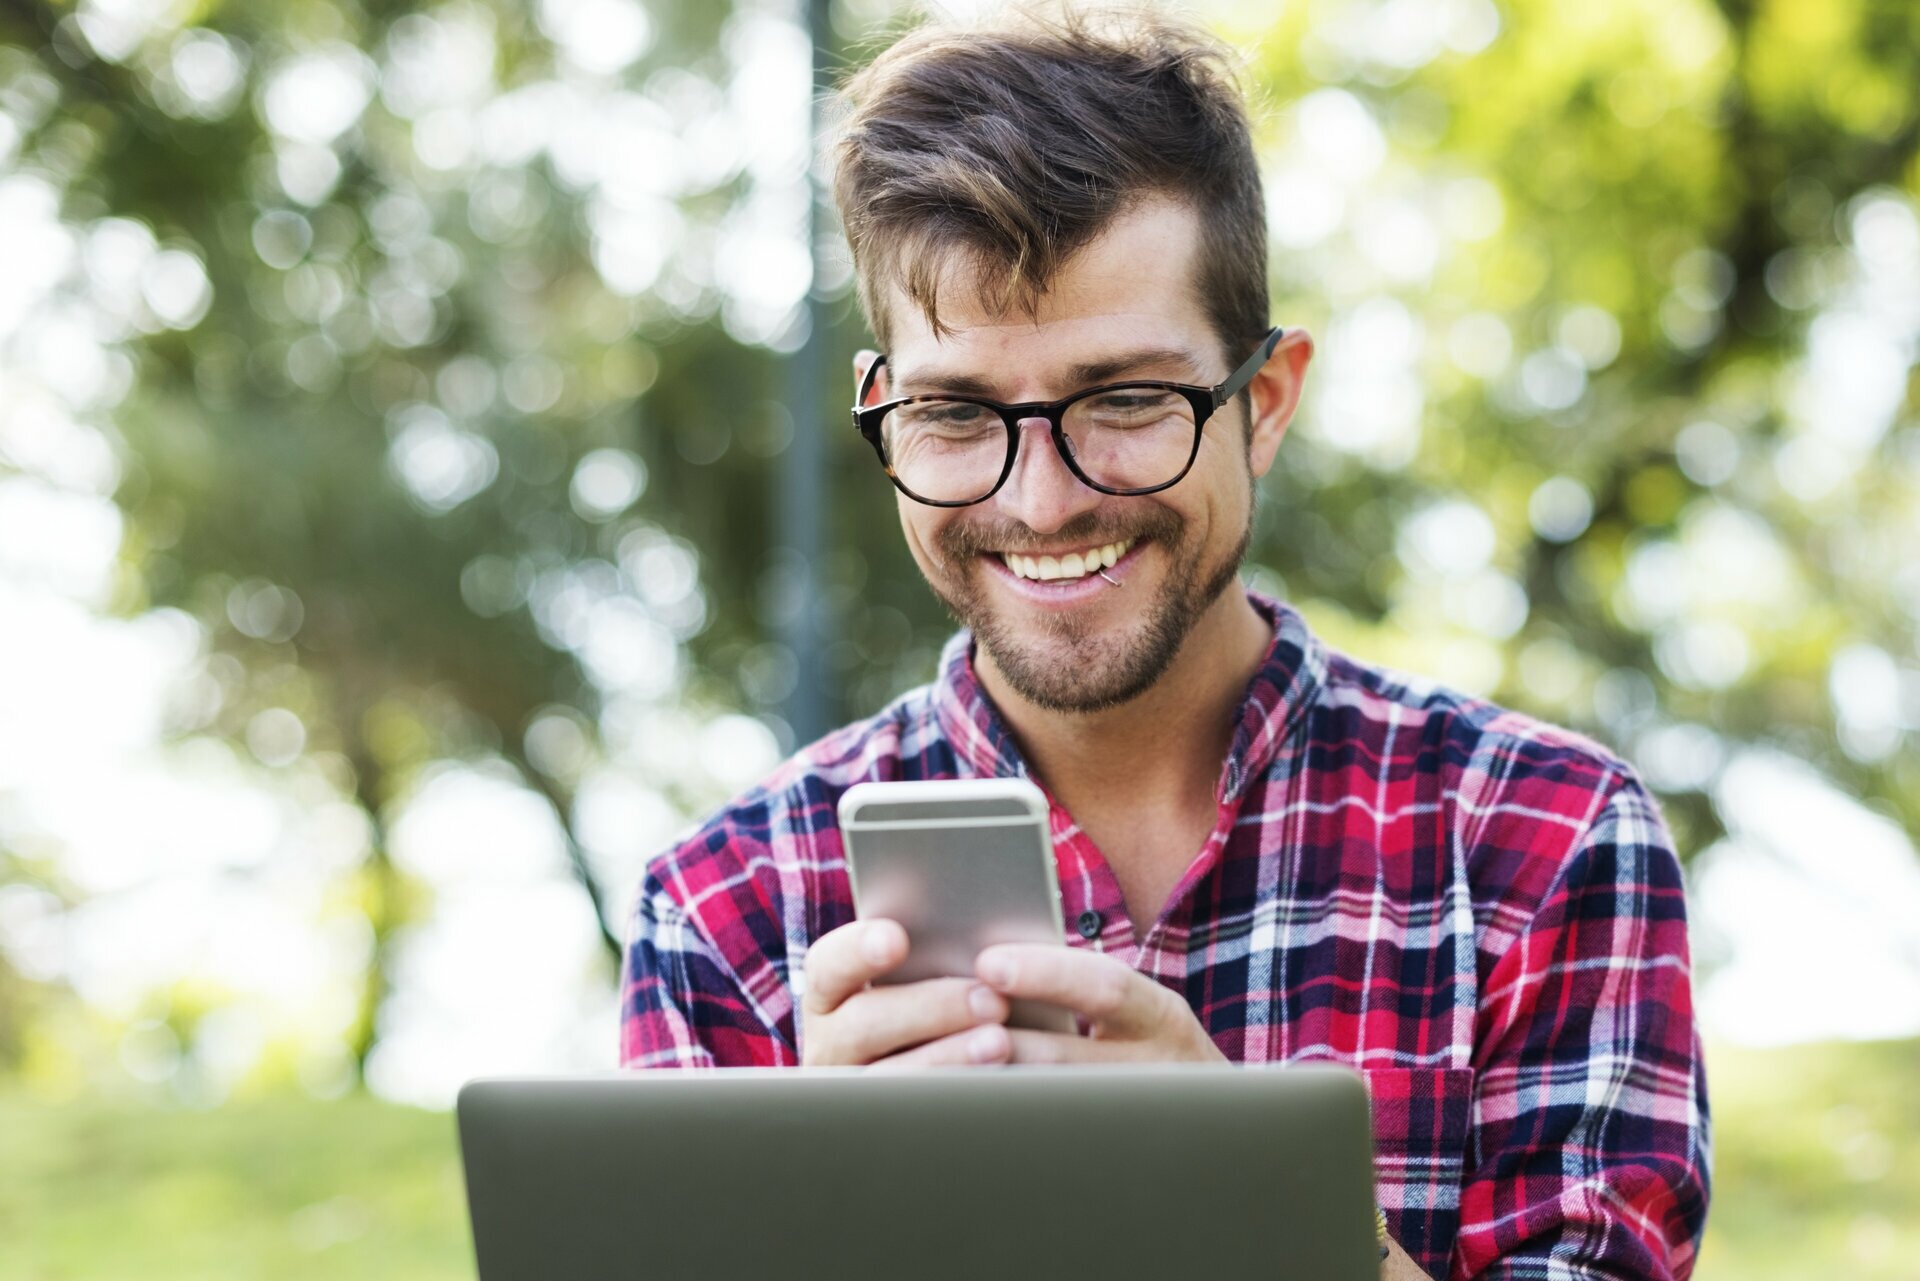 Na zdjęciu znajduje się uśmiechnięty student w okularach, trzymający smartfona. Przed nim widać też ekran laptopa.